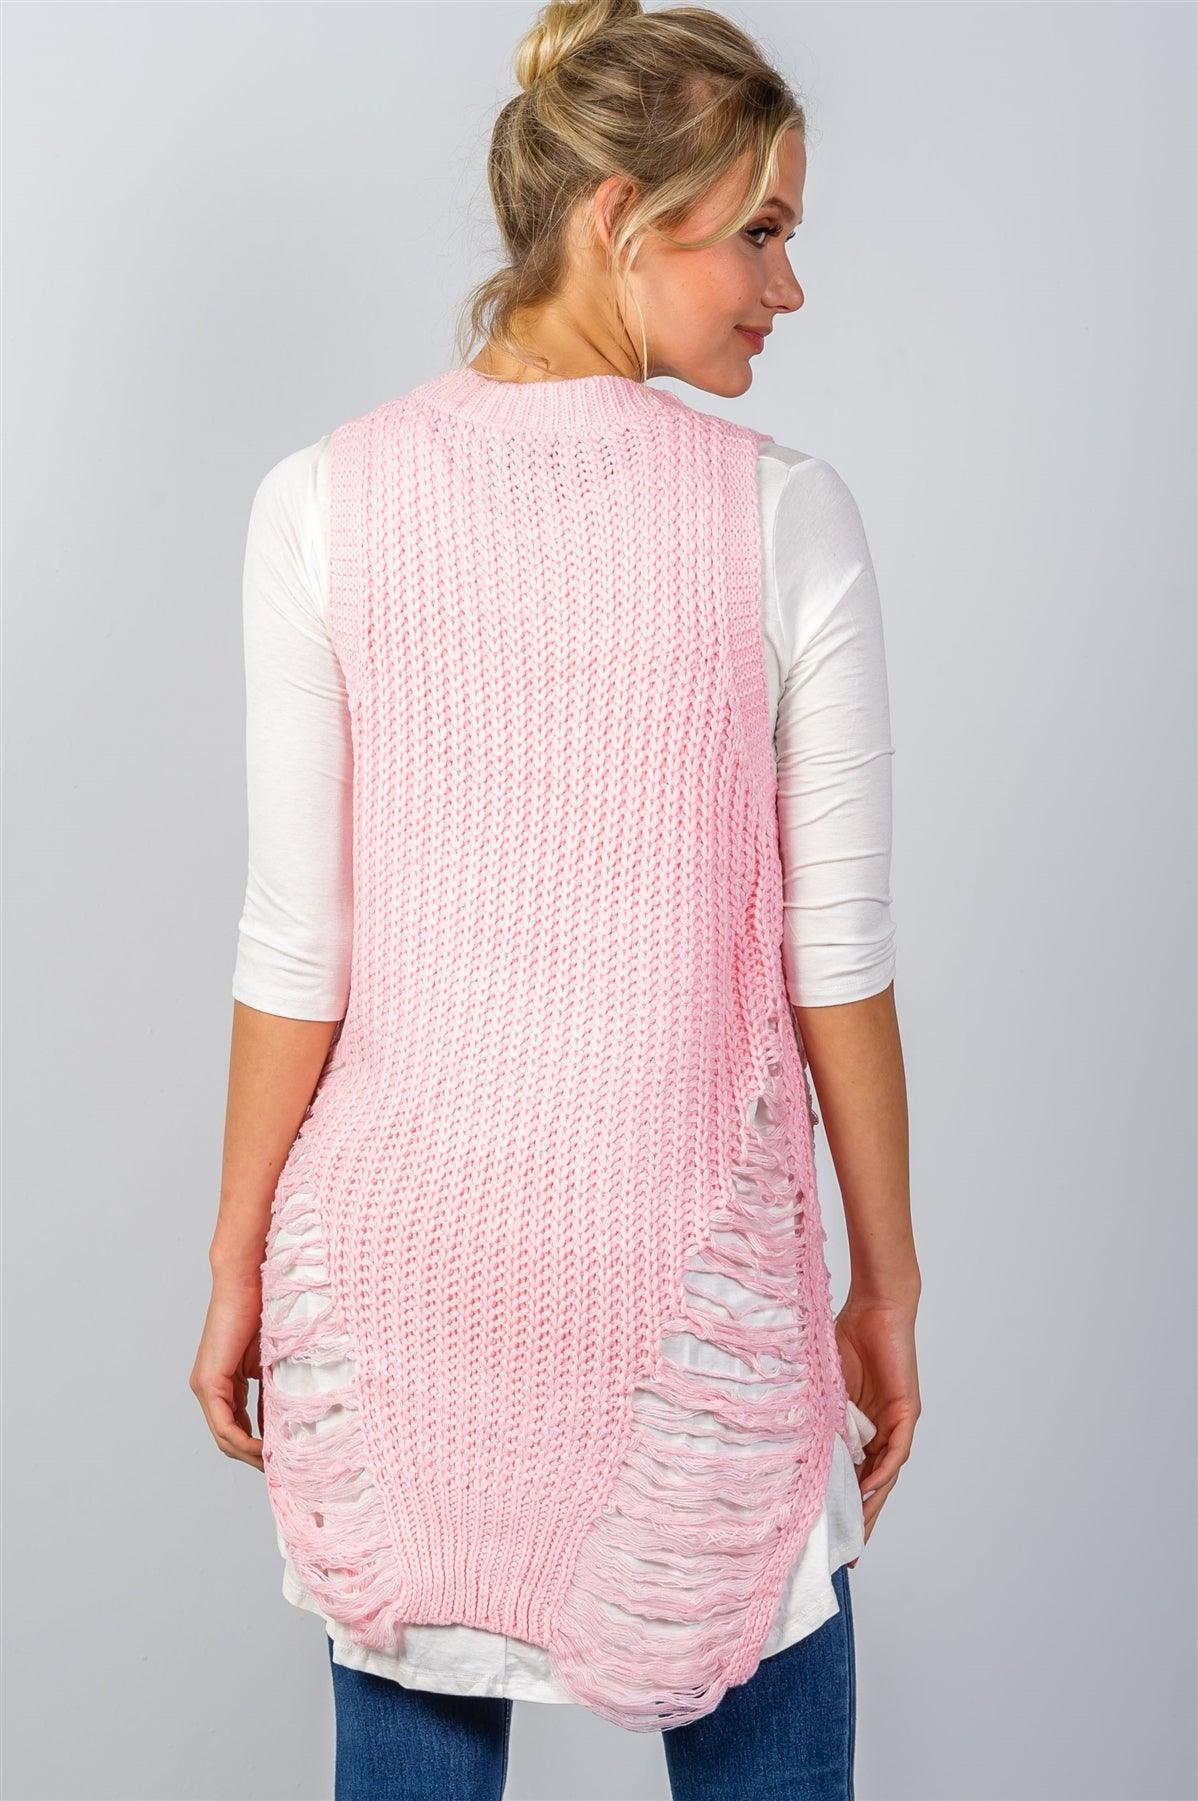 Pink Sleeveless Sweater Knit Distress Sides Dress /3-4